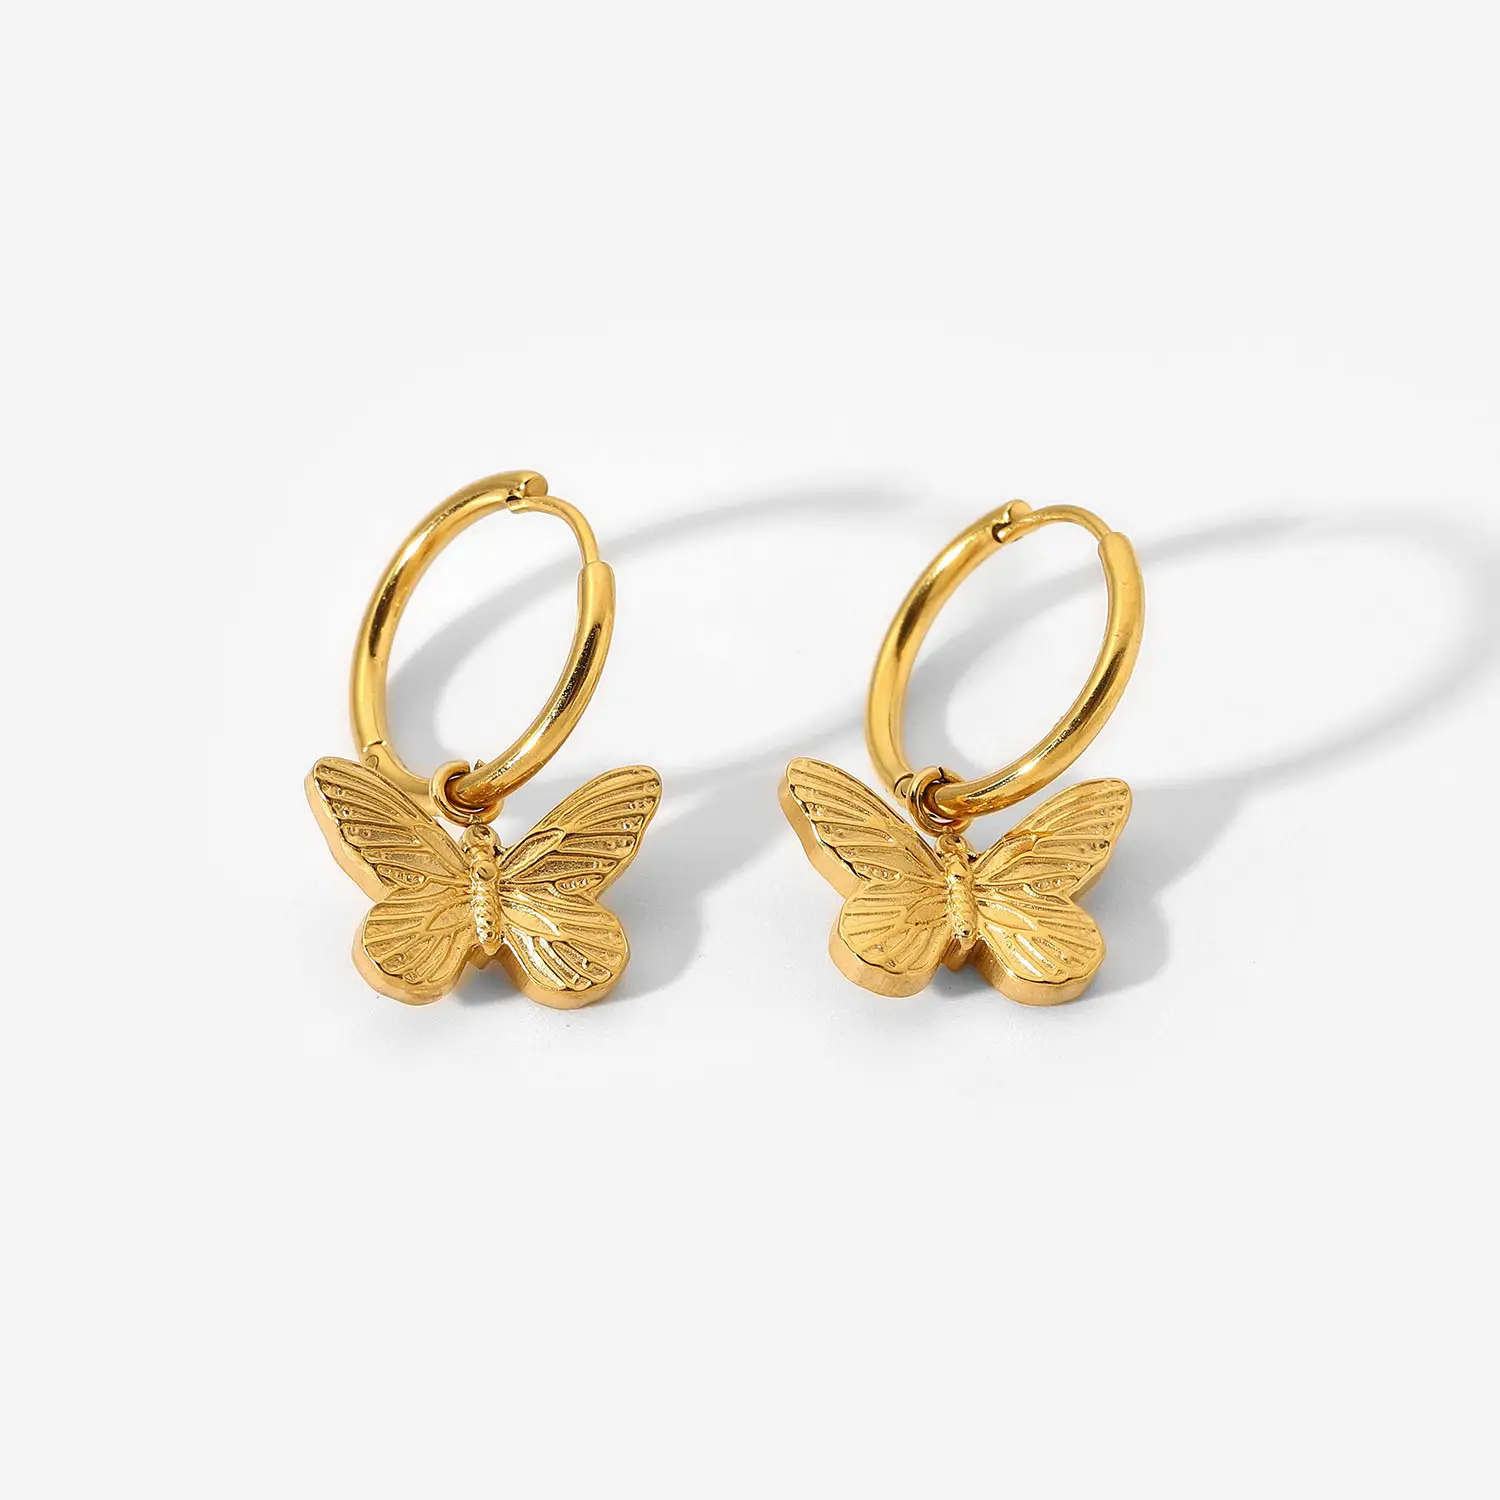 Boucle d'oreille bijoux Alibaba Jewelry Butterfly Earrings Huggies Earrings Women Minimalist Jewelry Wholesale Bijoux femme